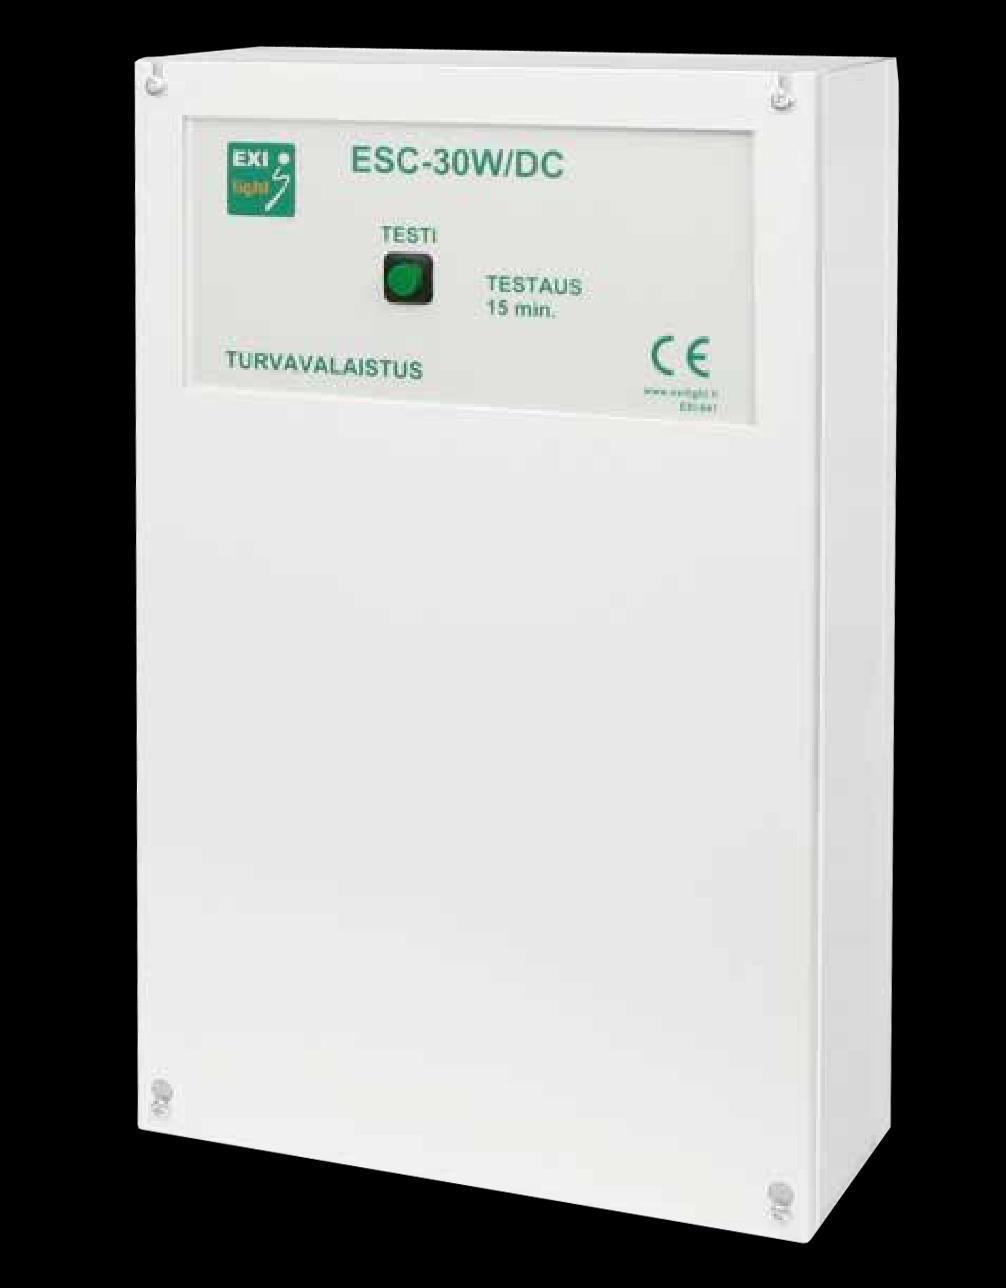 tekniset tiedot ESC-30 W/DC turvavalokeskukset ESC-30 W/DC ESC-30W/DC on akkuyksikkövalaisimien ohjaus ja testauskeskus. Järjestelmän kaikki valaisimet ovat akullisia Led-valaisimia.